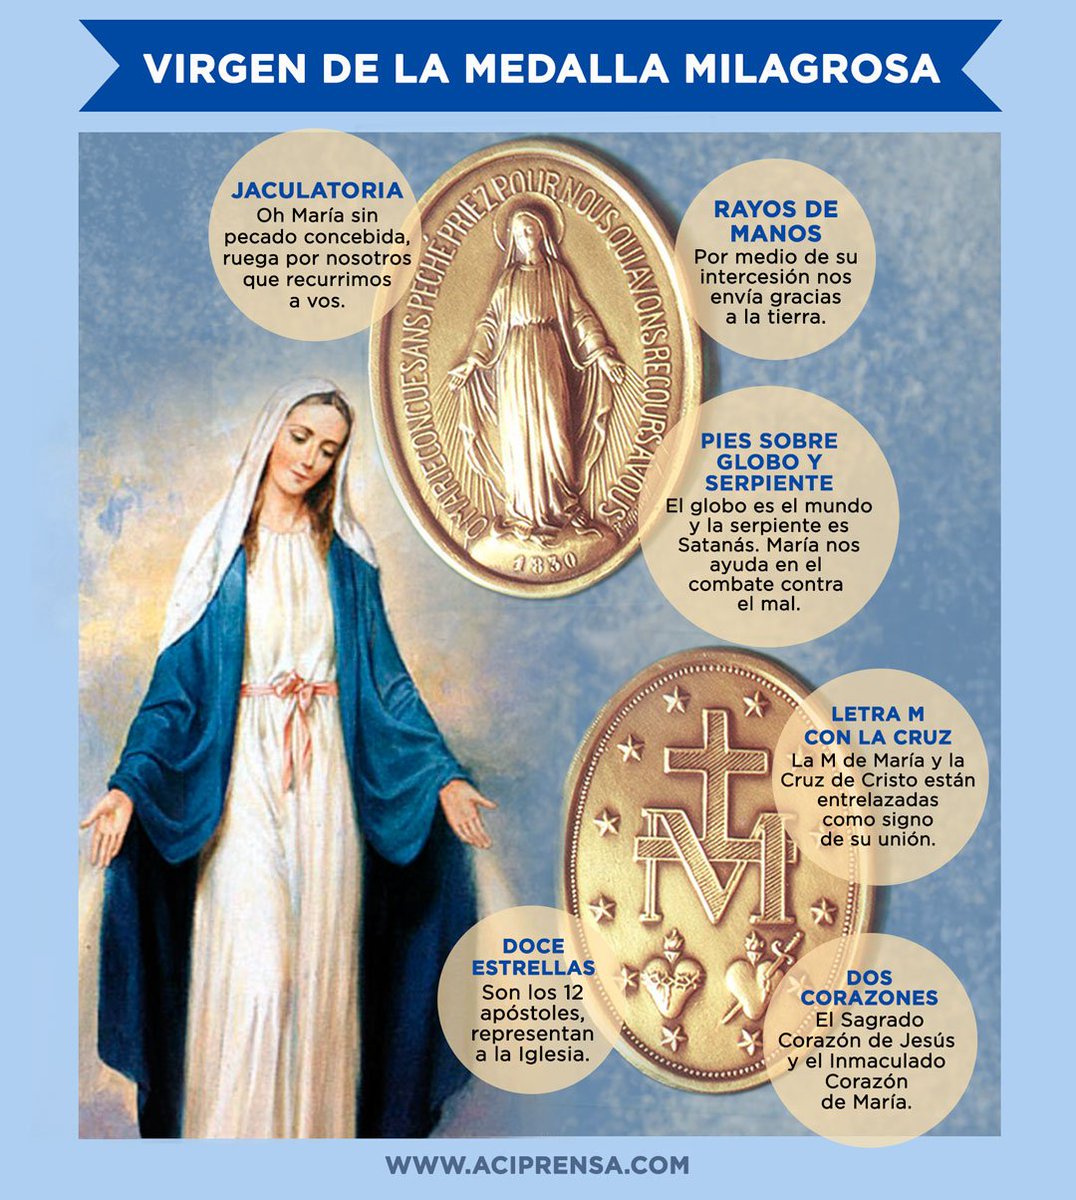 La Medalla Milagrosa: uno de los objetos ms venerados del mundo